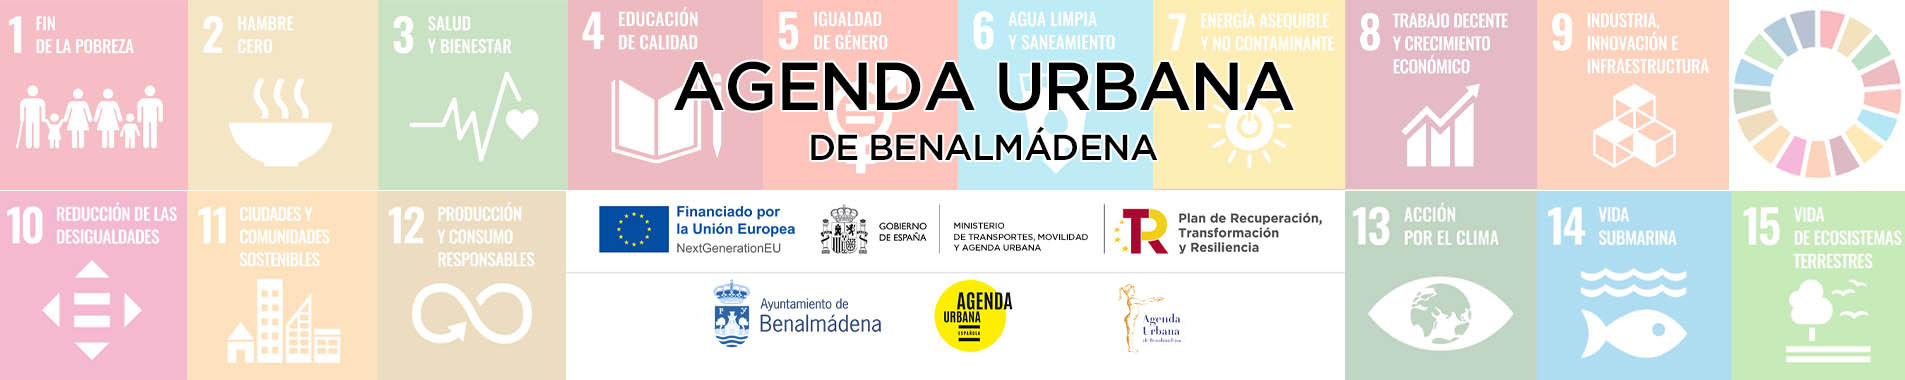 Agenda Urbana de Benalmádena